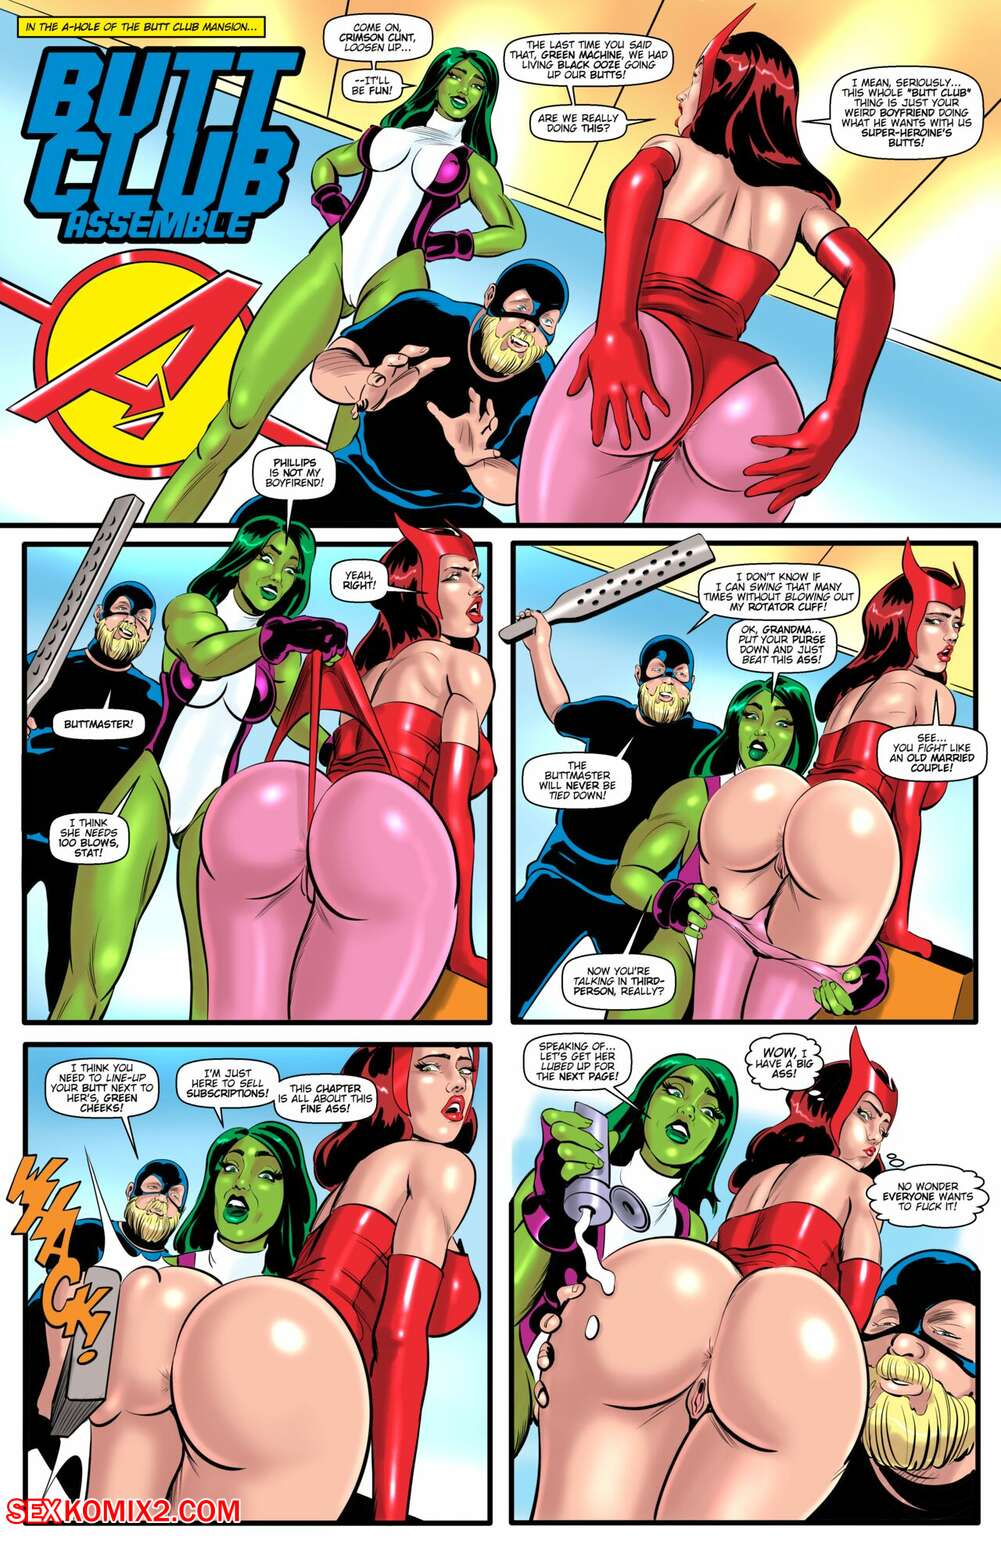 1001px x 1547px - âœ…ï¸ Porn comic Butt Club Assemble. Avengers. Tim Phillips. Sex comic babes  love anal | Porn comics in English for adults only | sexkomix2.com